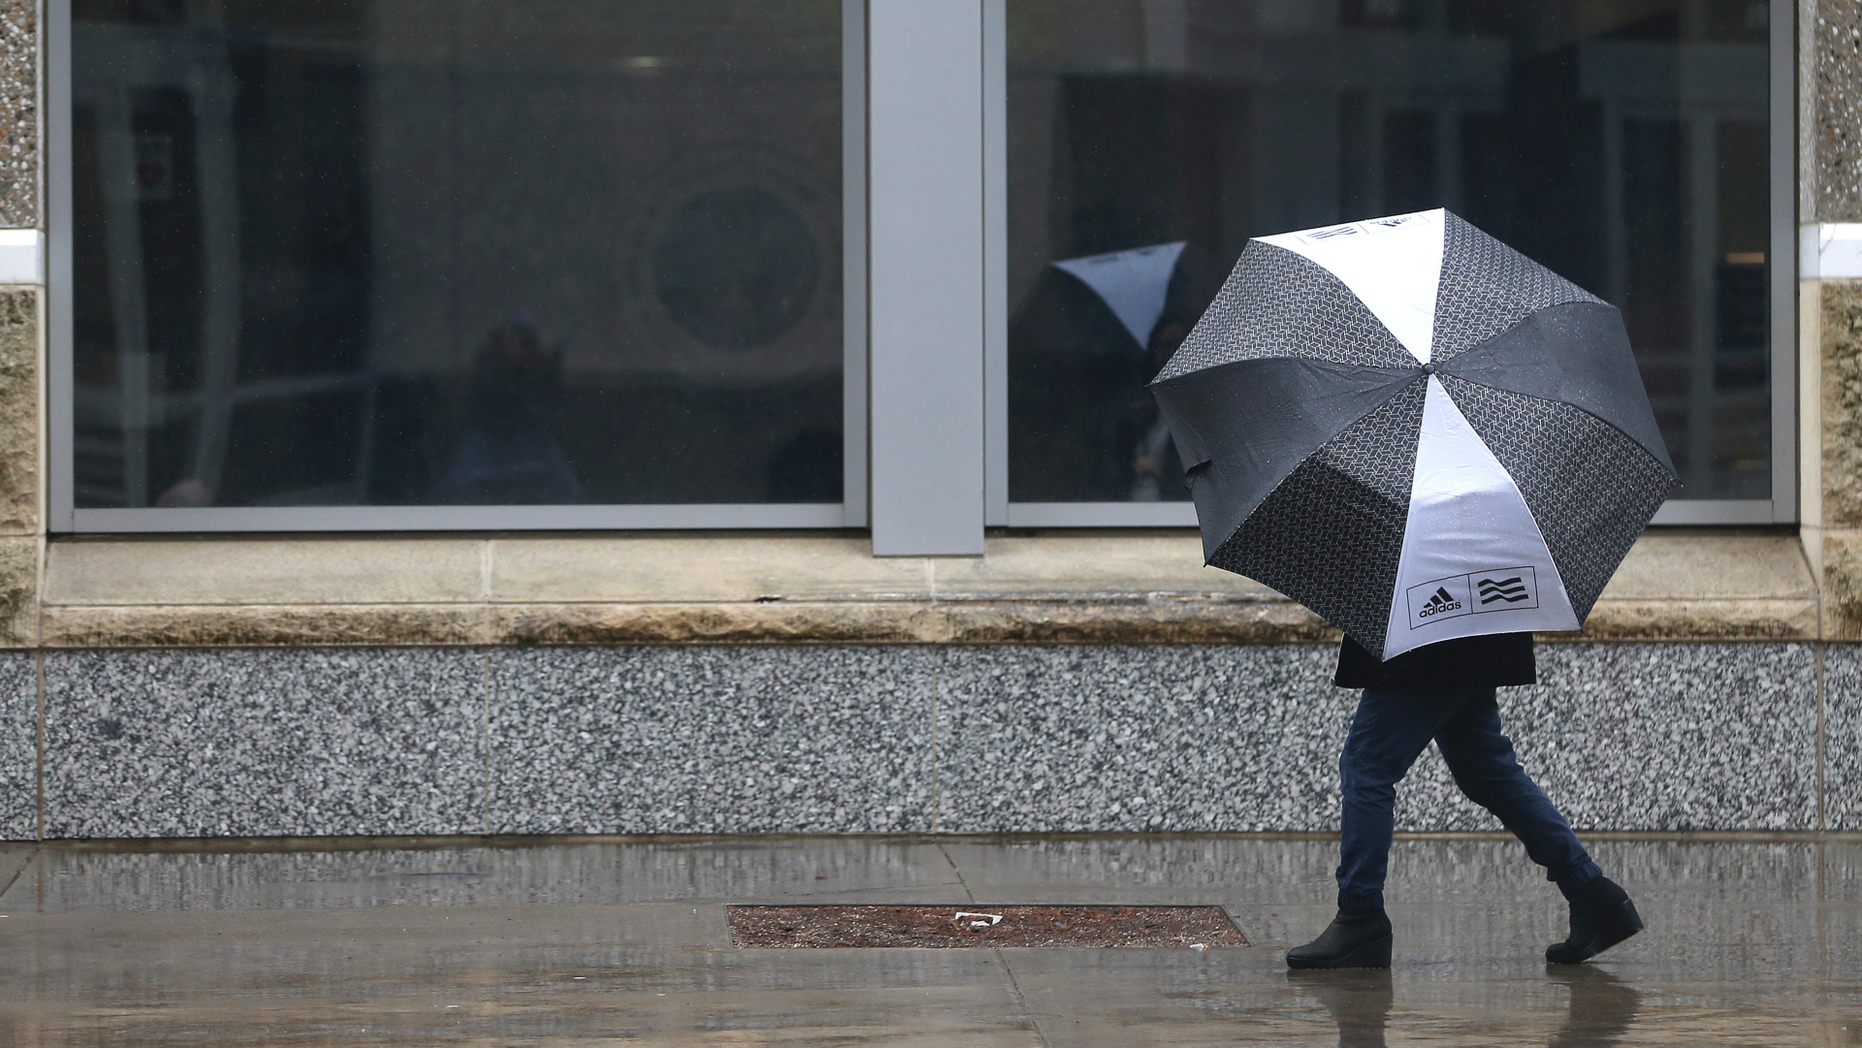 A person huddles under an umbrella as rain falls in Sacramento, California on Tuesday, February 26, 2019. (AP Photo / Rich Pedroncelli)